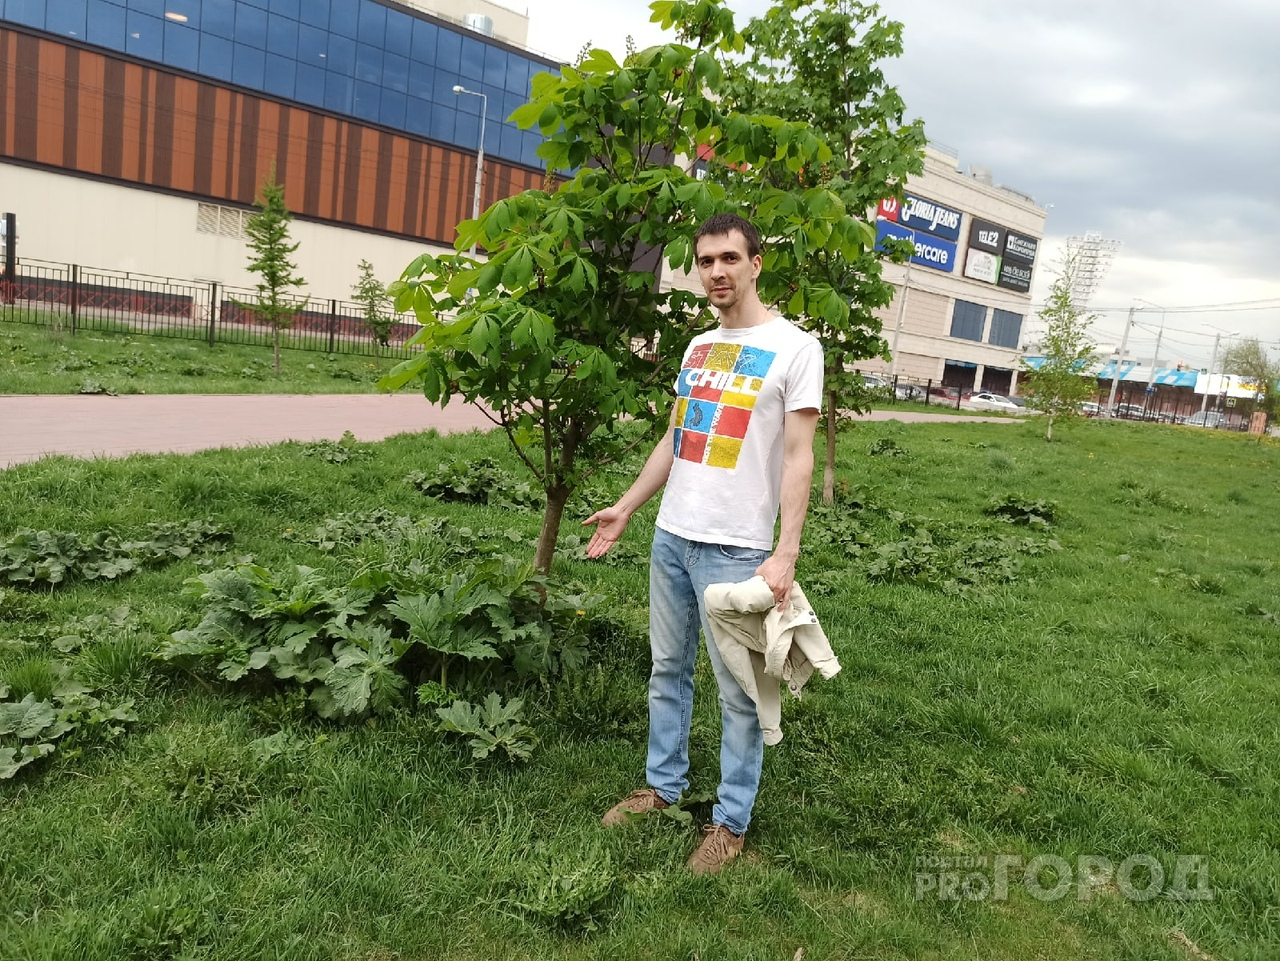 Борщевик захватывает центр Ярославля и парки: ответ властей